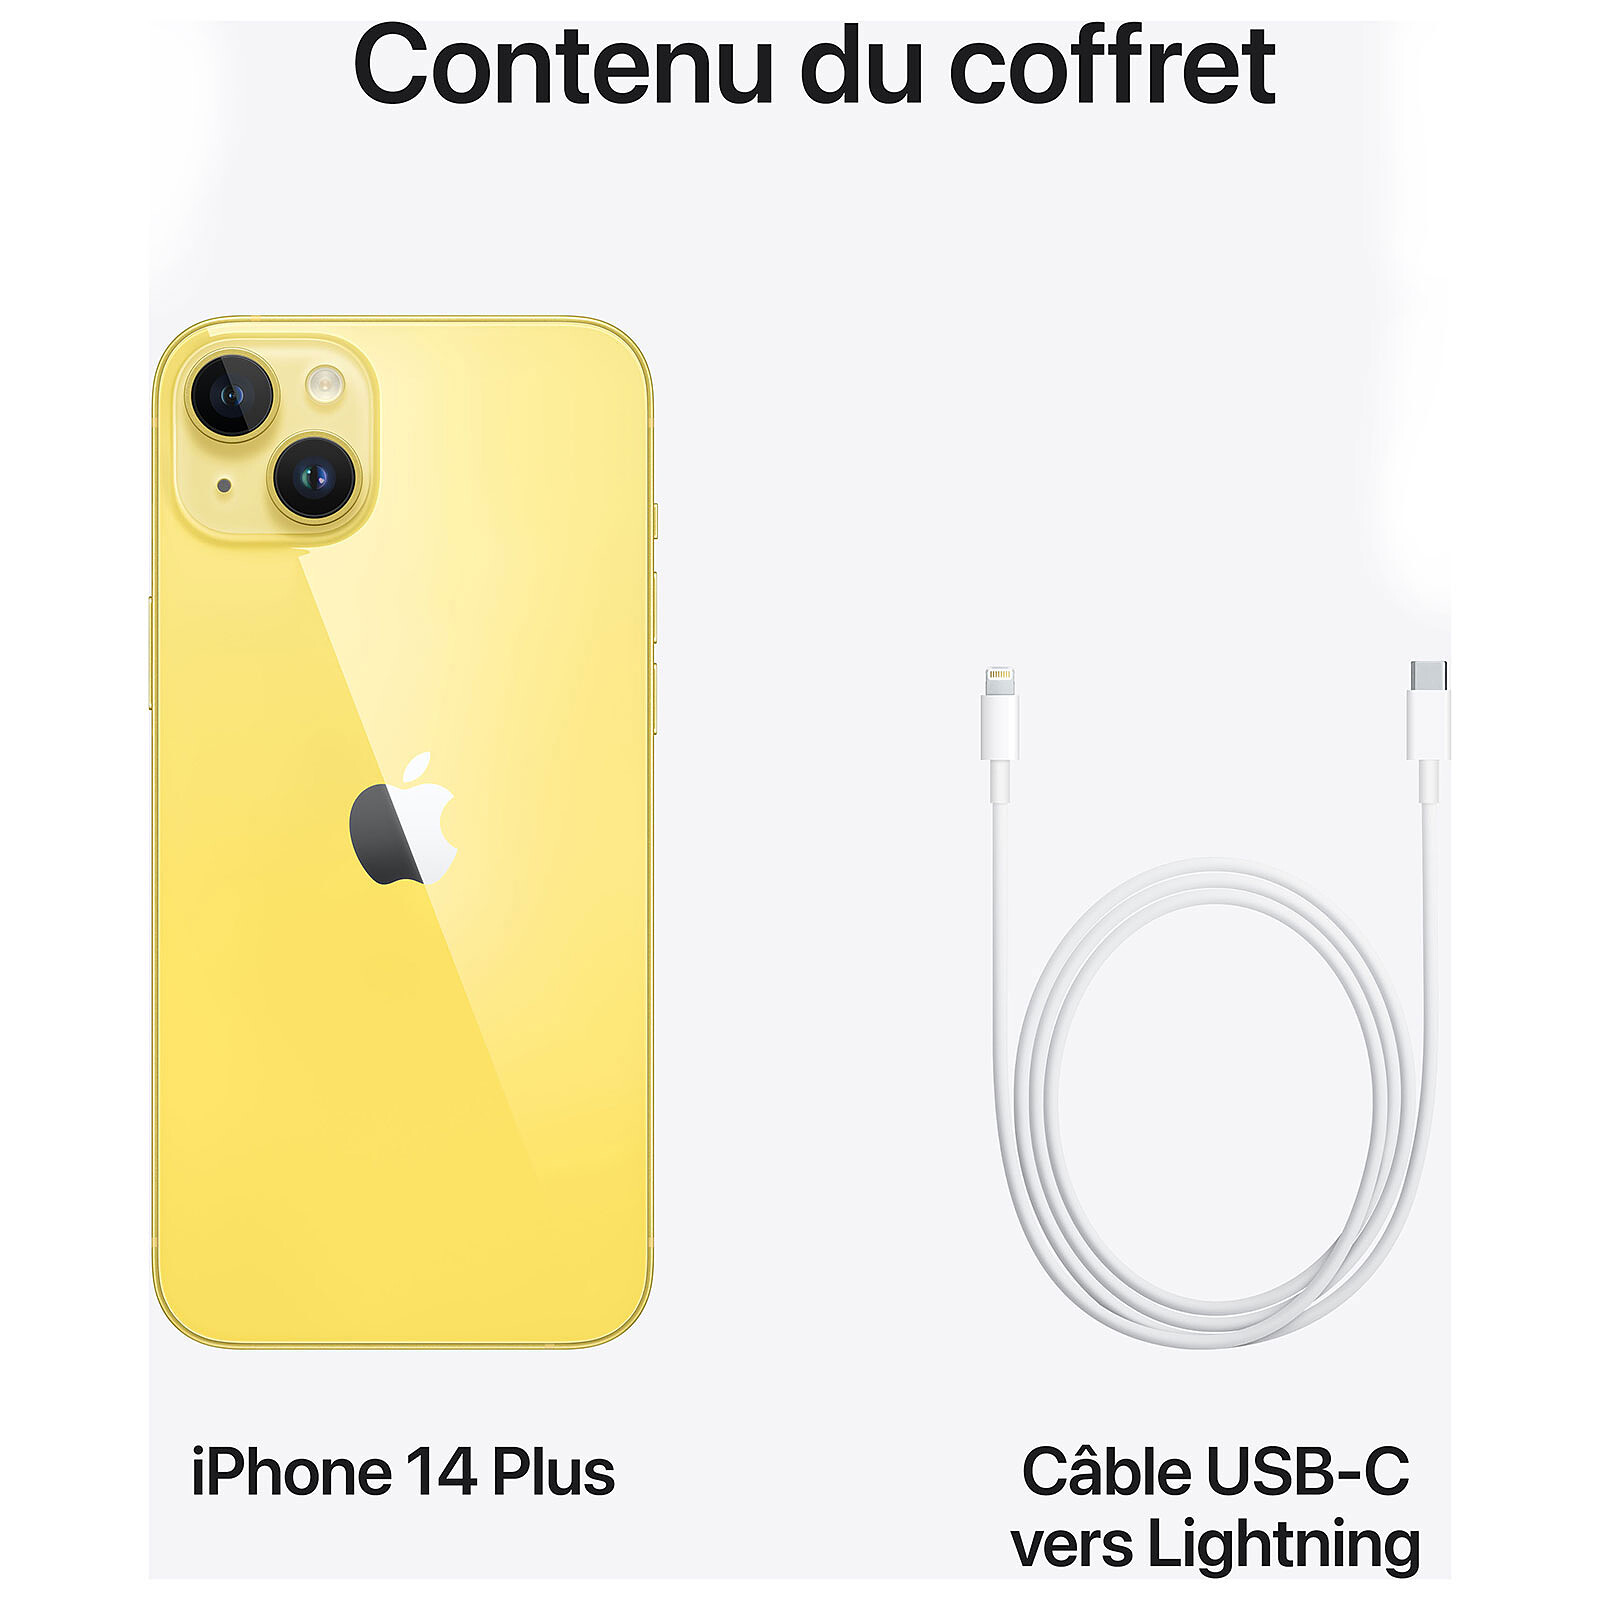 iPhone 14 Plus: características, ficha técnica y precio